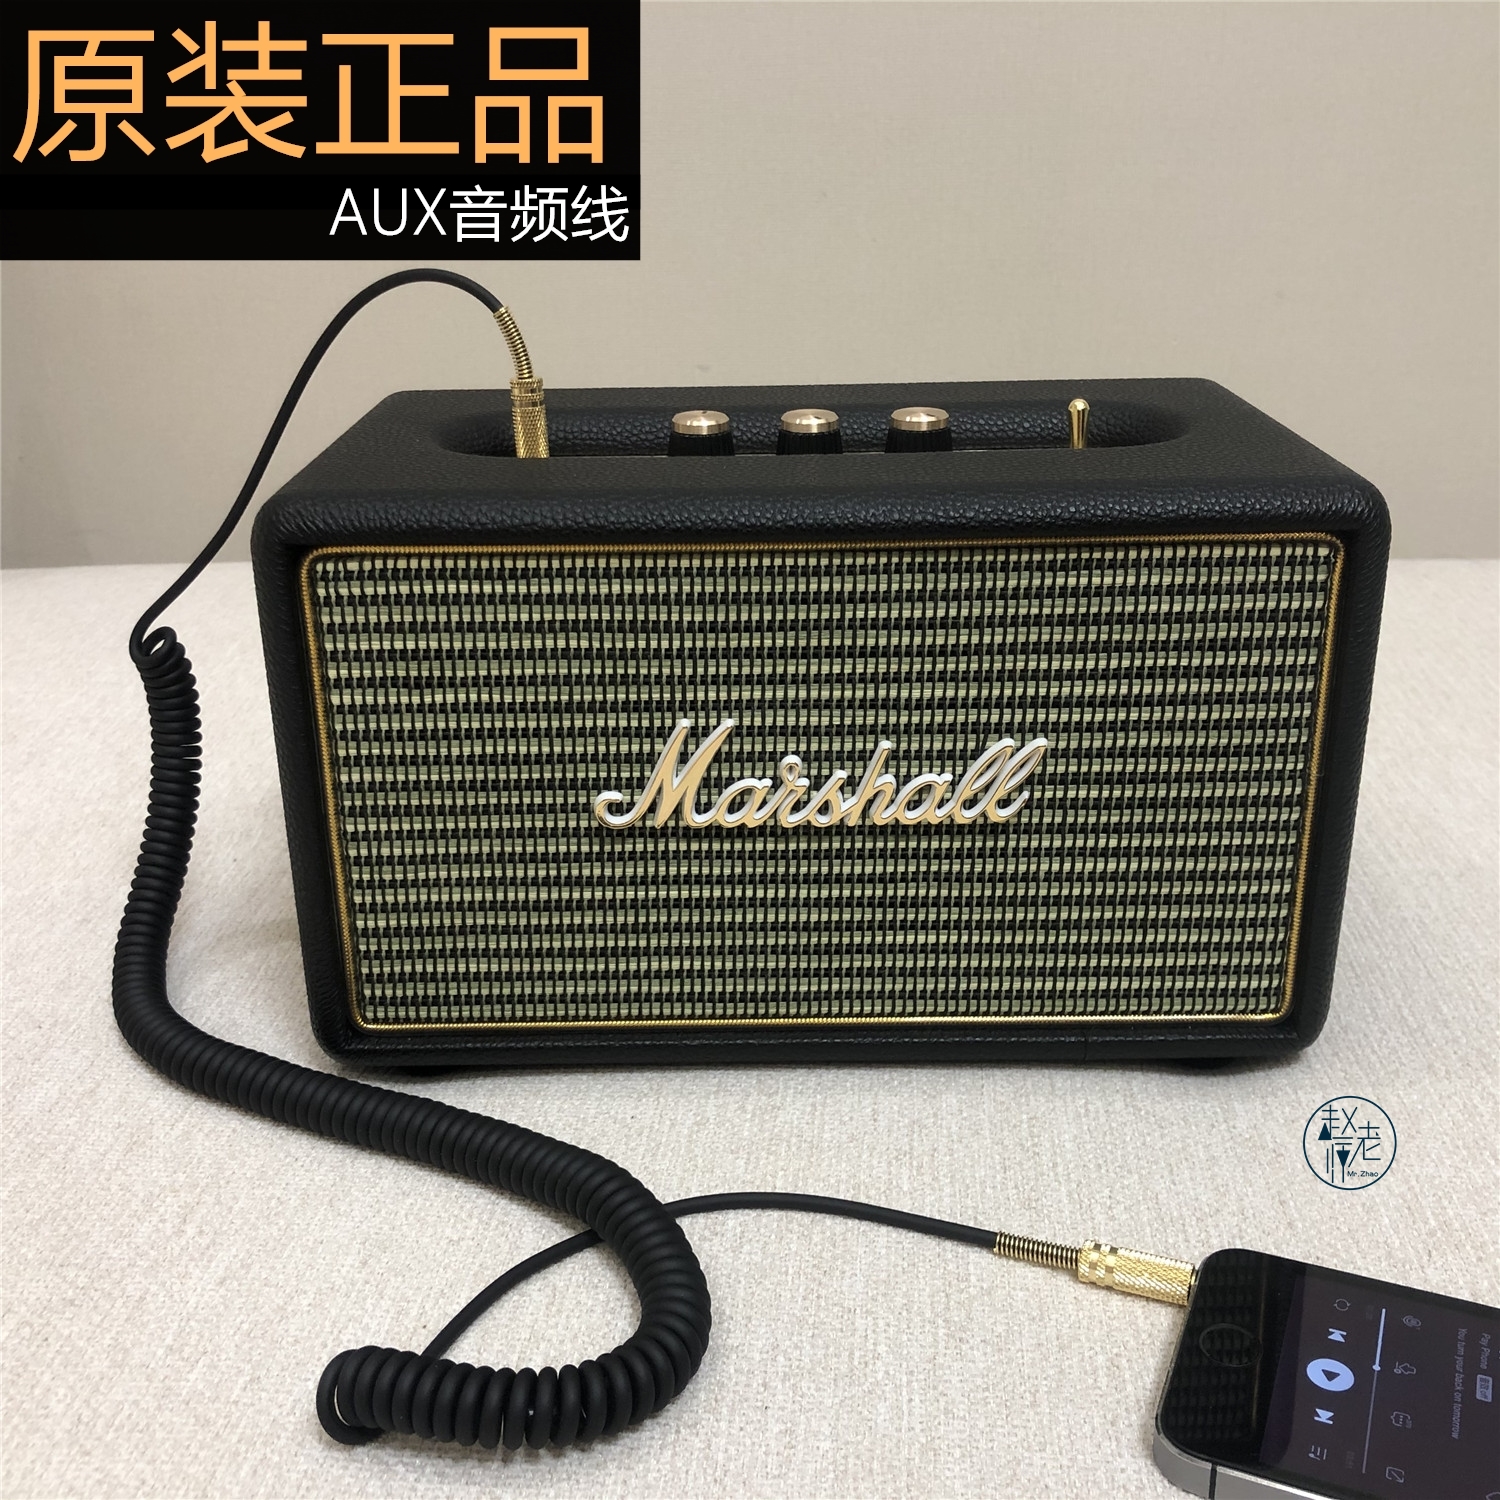 原装MARSHALL马歇尔音箱3.5mmAUX音频线蓝牙音响耳机弹簧连接线